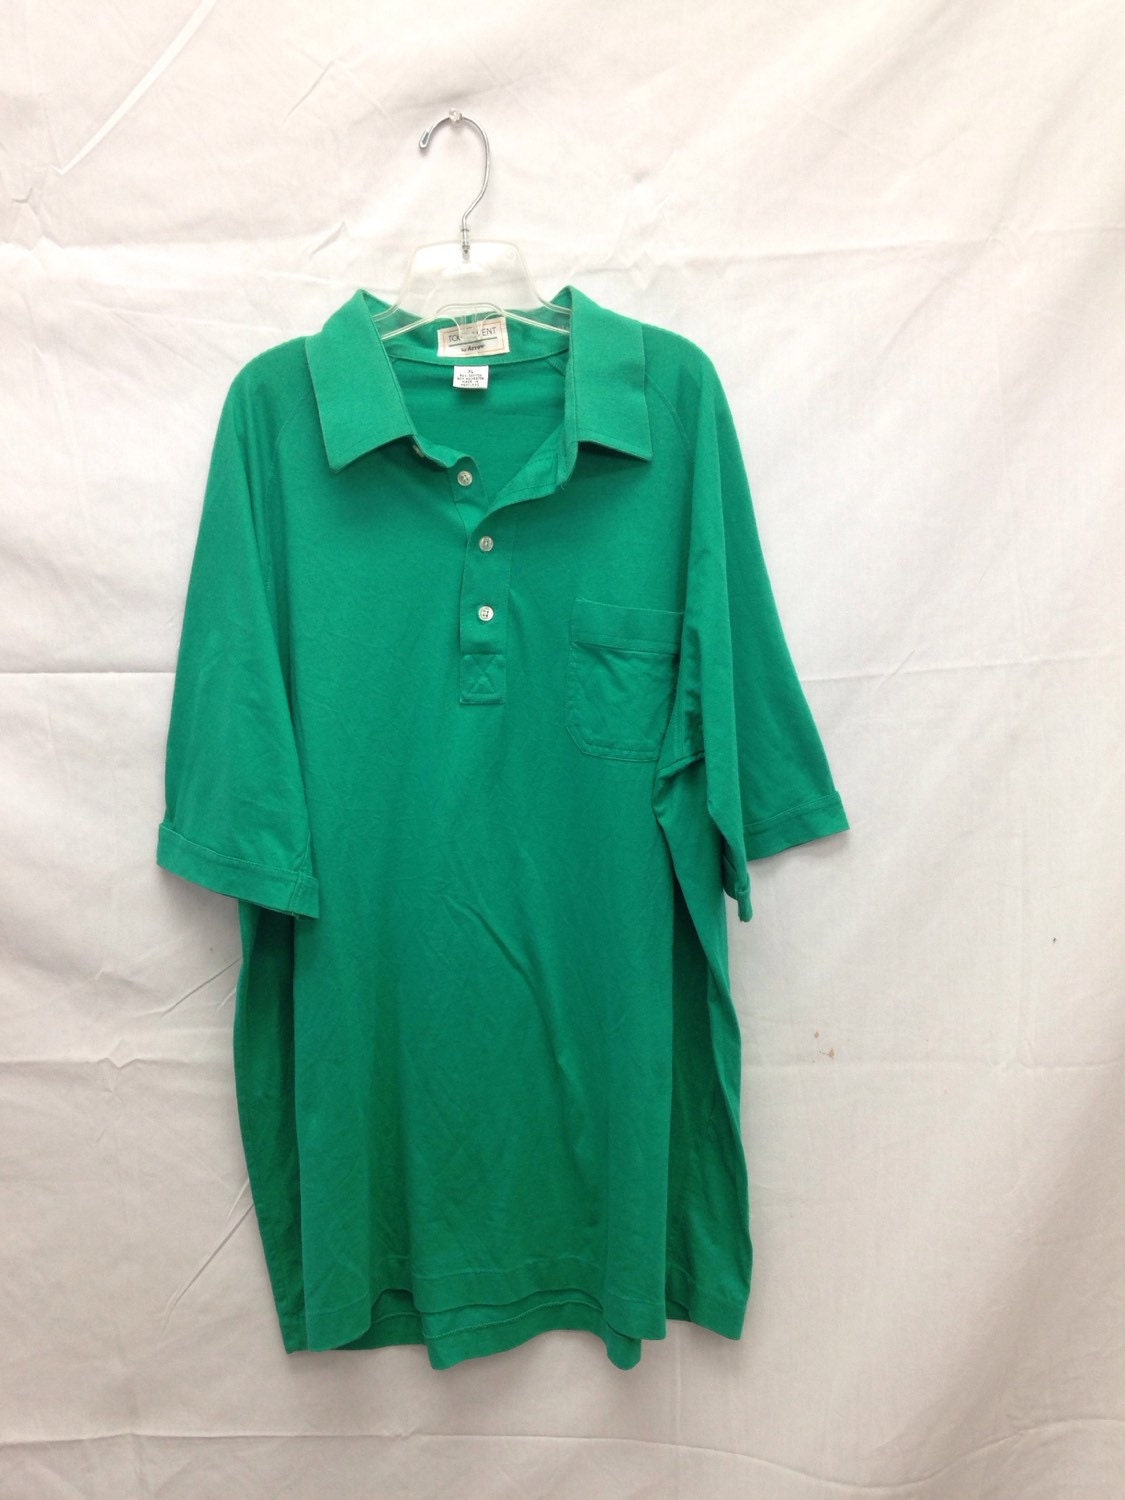 Mens 1980s green tournament by arrow short sleeve shirt.